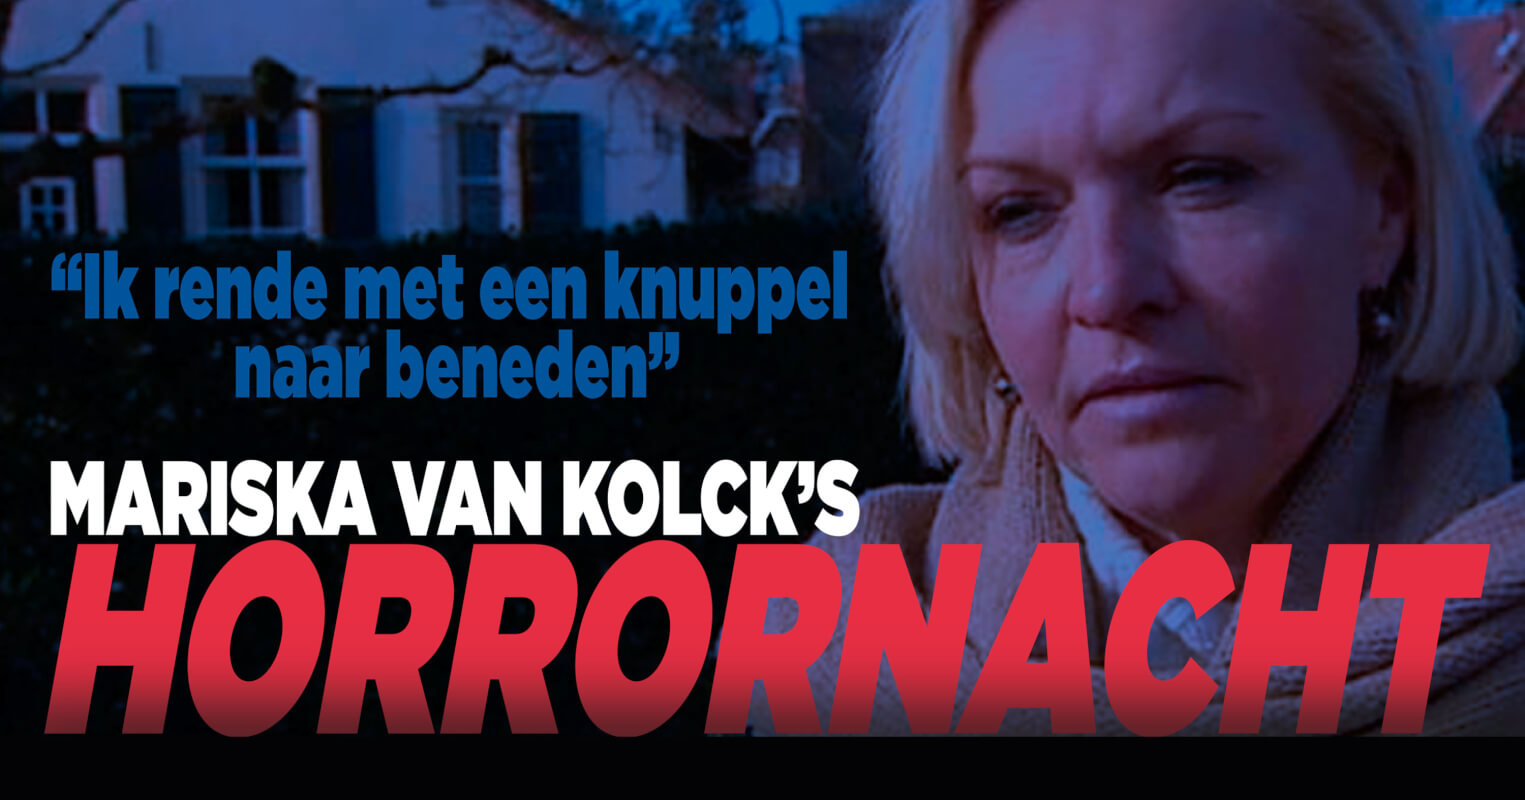 Mariska van Kolck had slachtofferhulp nodig na inbraak